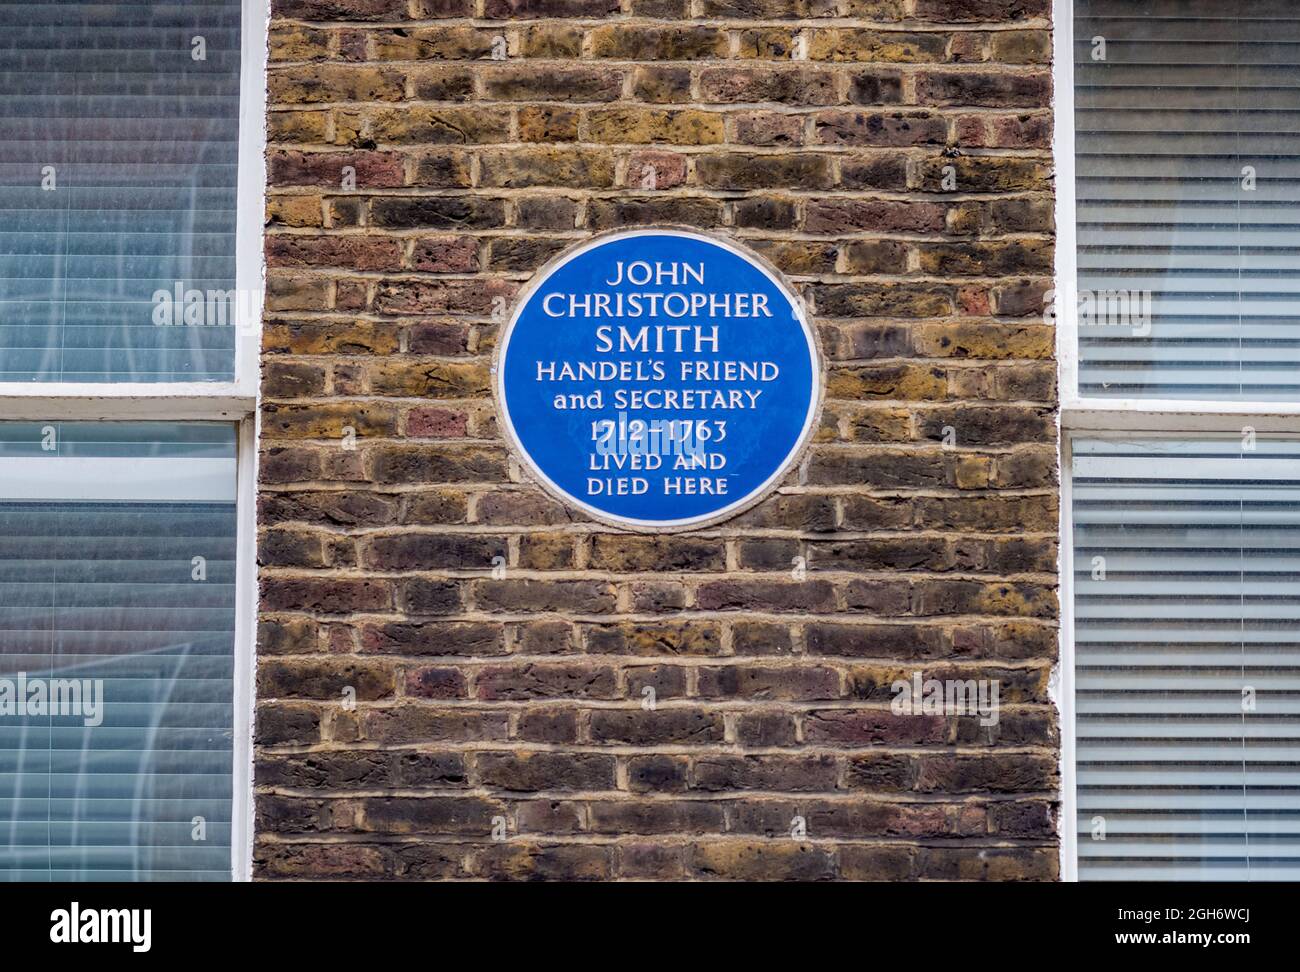 John Christopher Smith Blaue Plakette 6 Carlisle Street, Soho London - John Christopher Smith Händels Freund und Sekretär 1712-1763 lebte und starb hier. Stockfoto